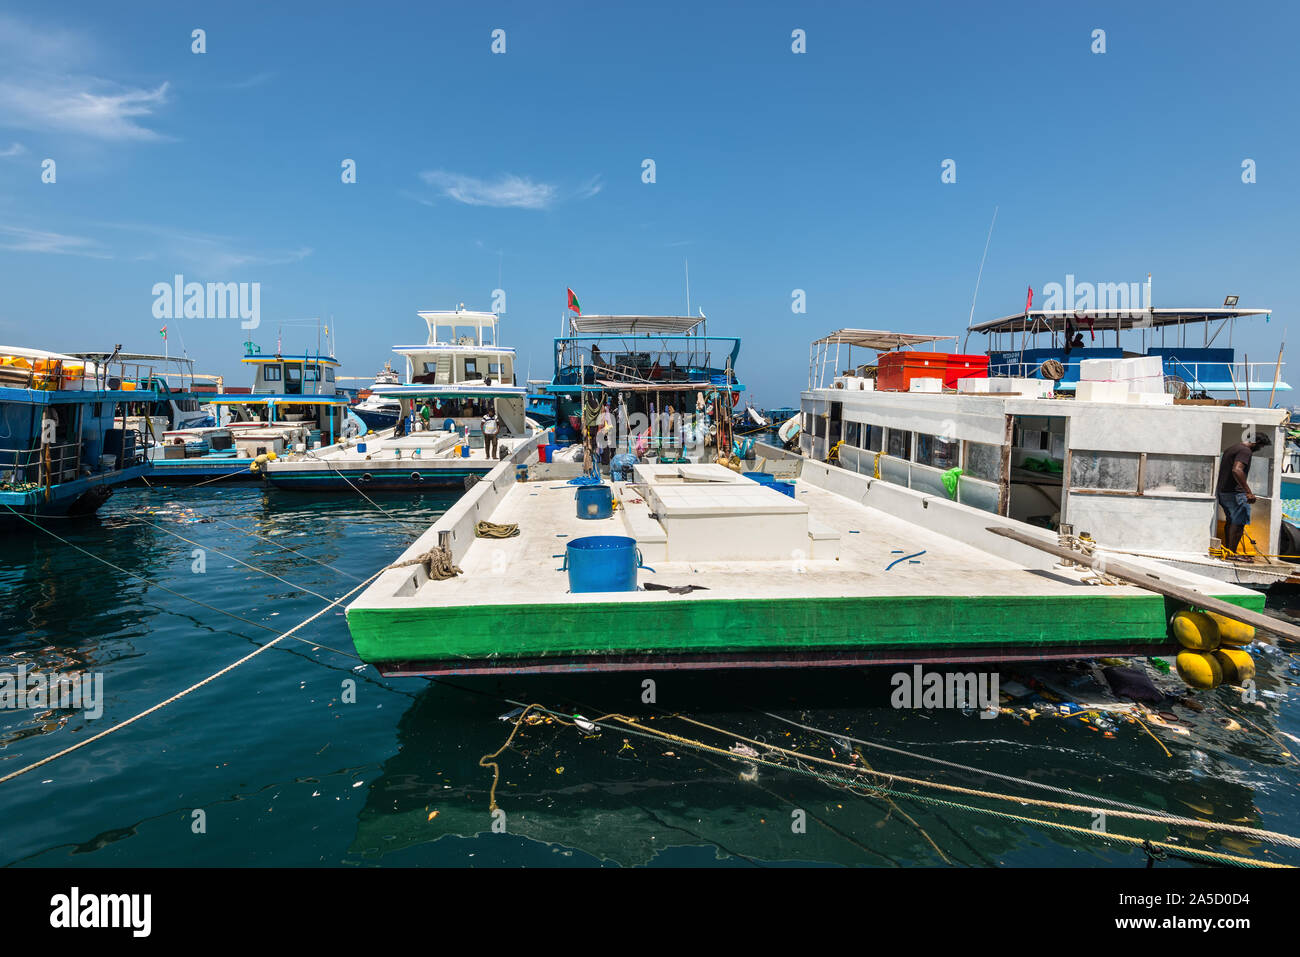 Male, Maldives - Le 18 novembre 2017 : Salon de poissons frais à Malé, Maldives. La pêche et le transport des bateaux sont amarrés au quai. La pollution des océans. Banque D'Images